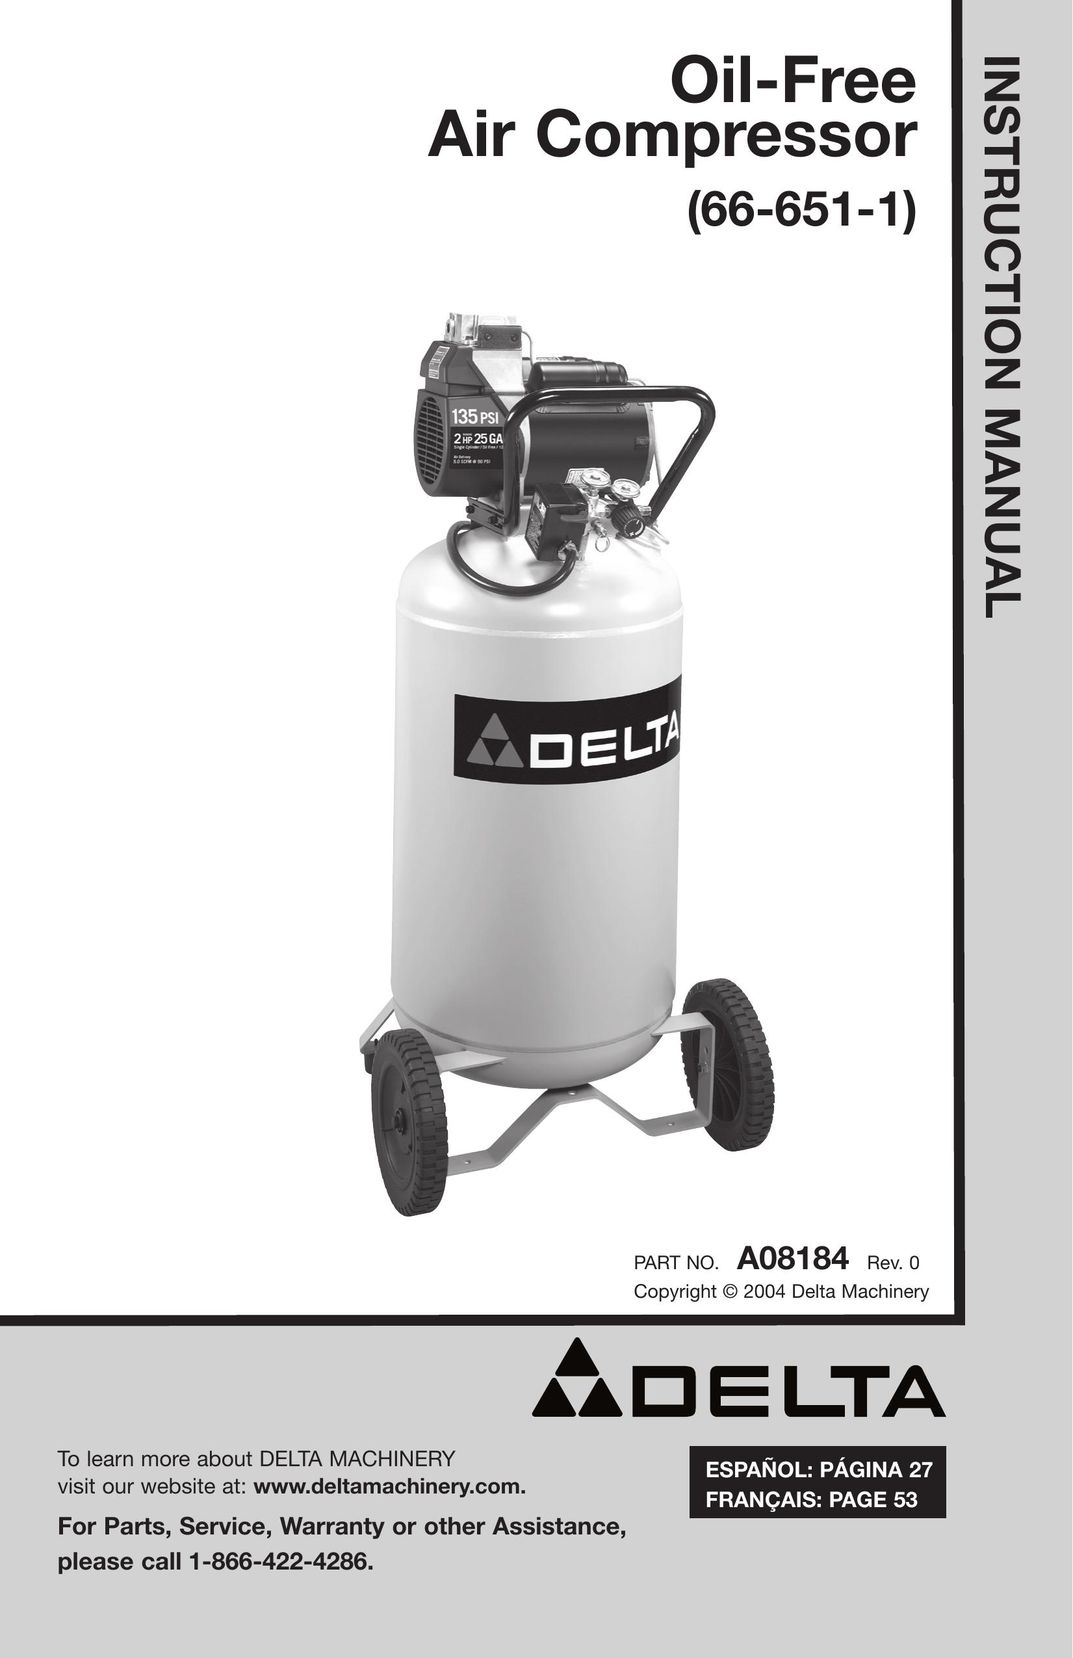 DeWalt A08184 Air Compressor User Manual